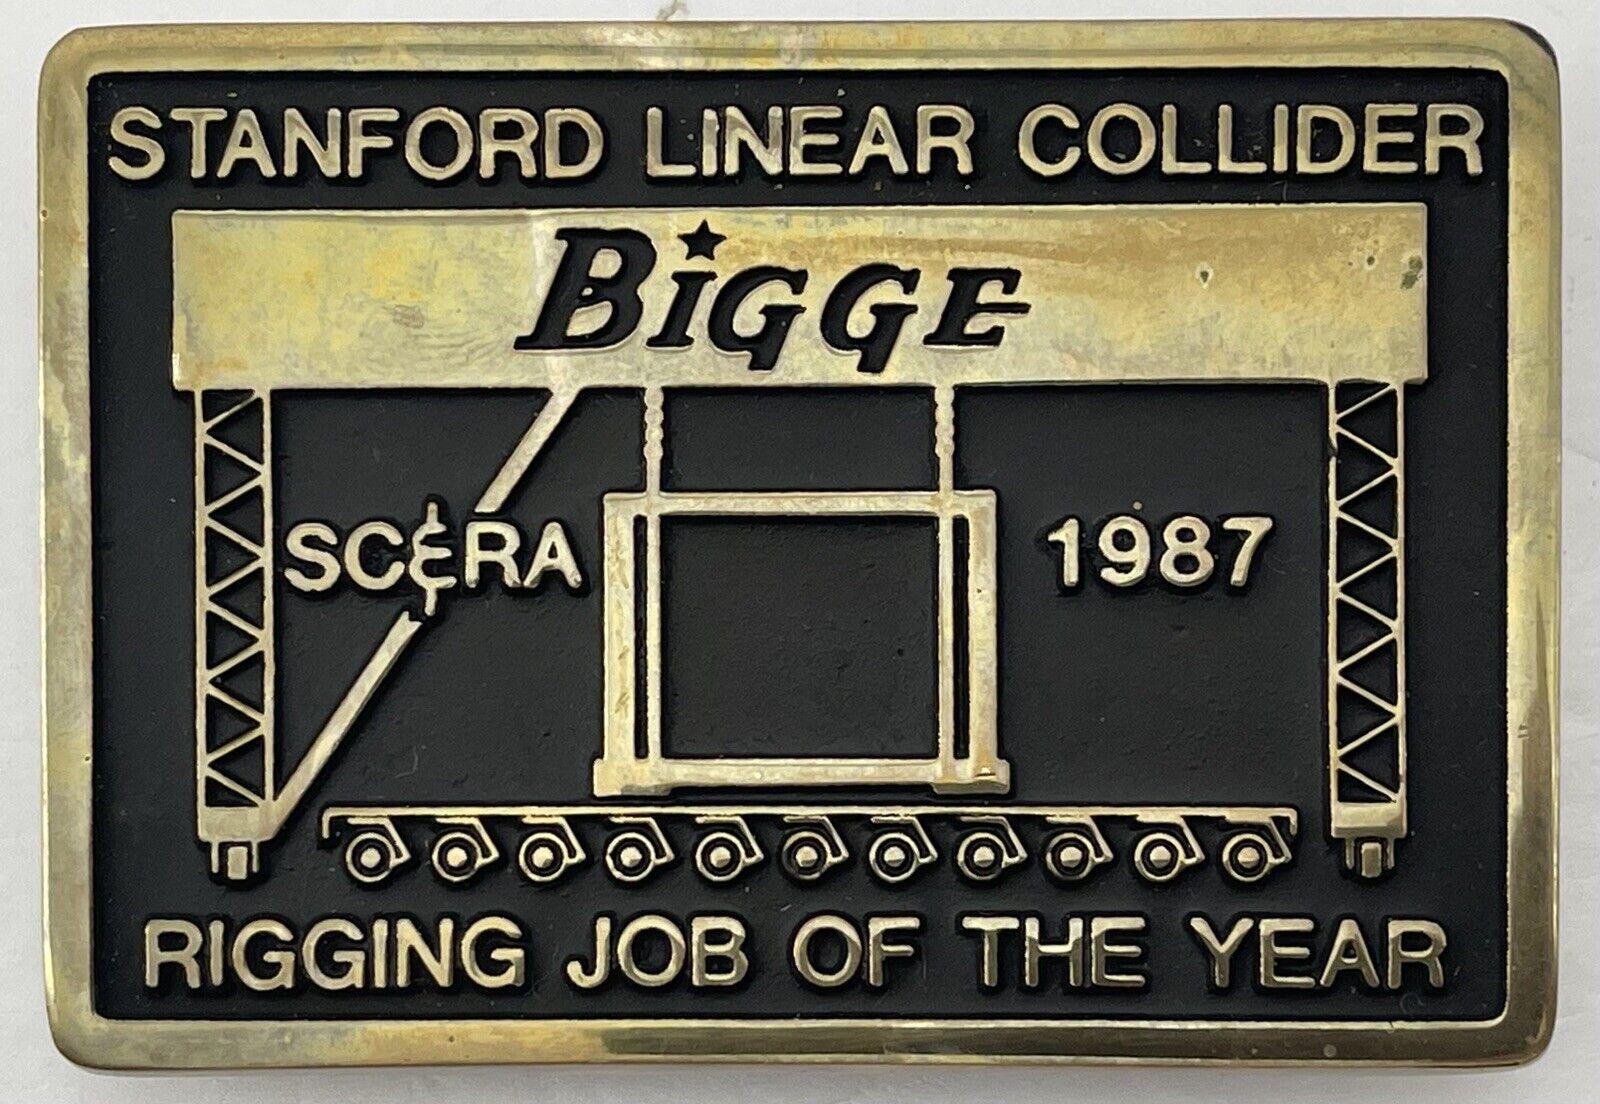 Vintage Anacortes Brass Belt Buckle Stanford Linear Collider SLAC Bigge SC&RA